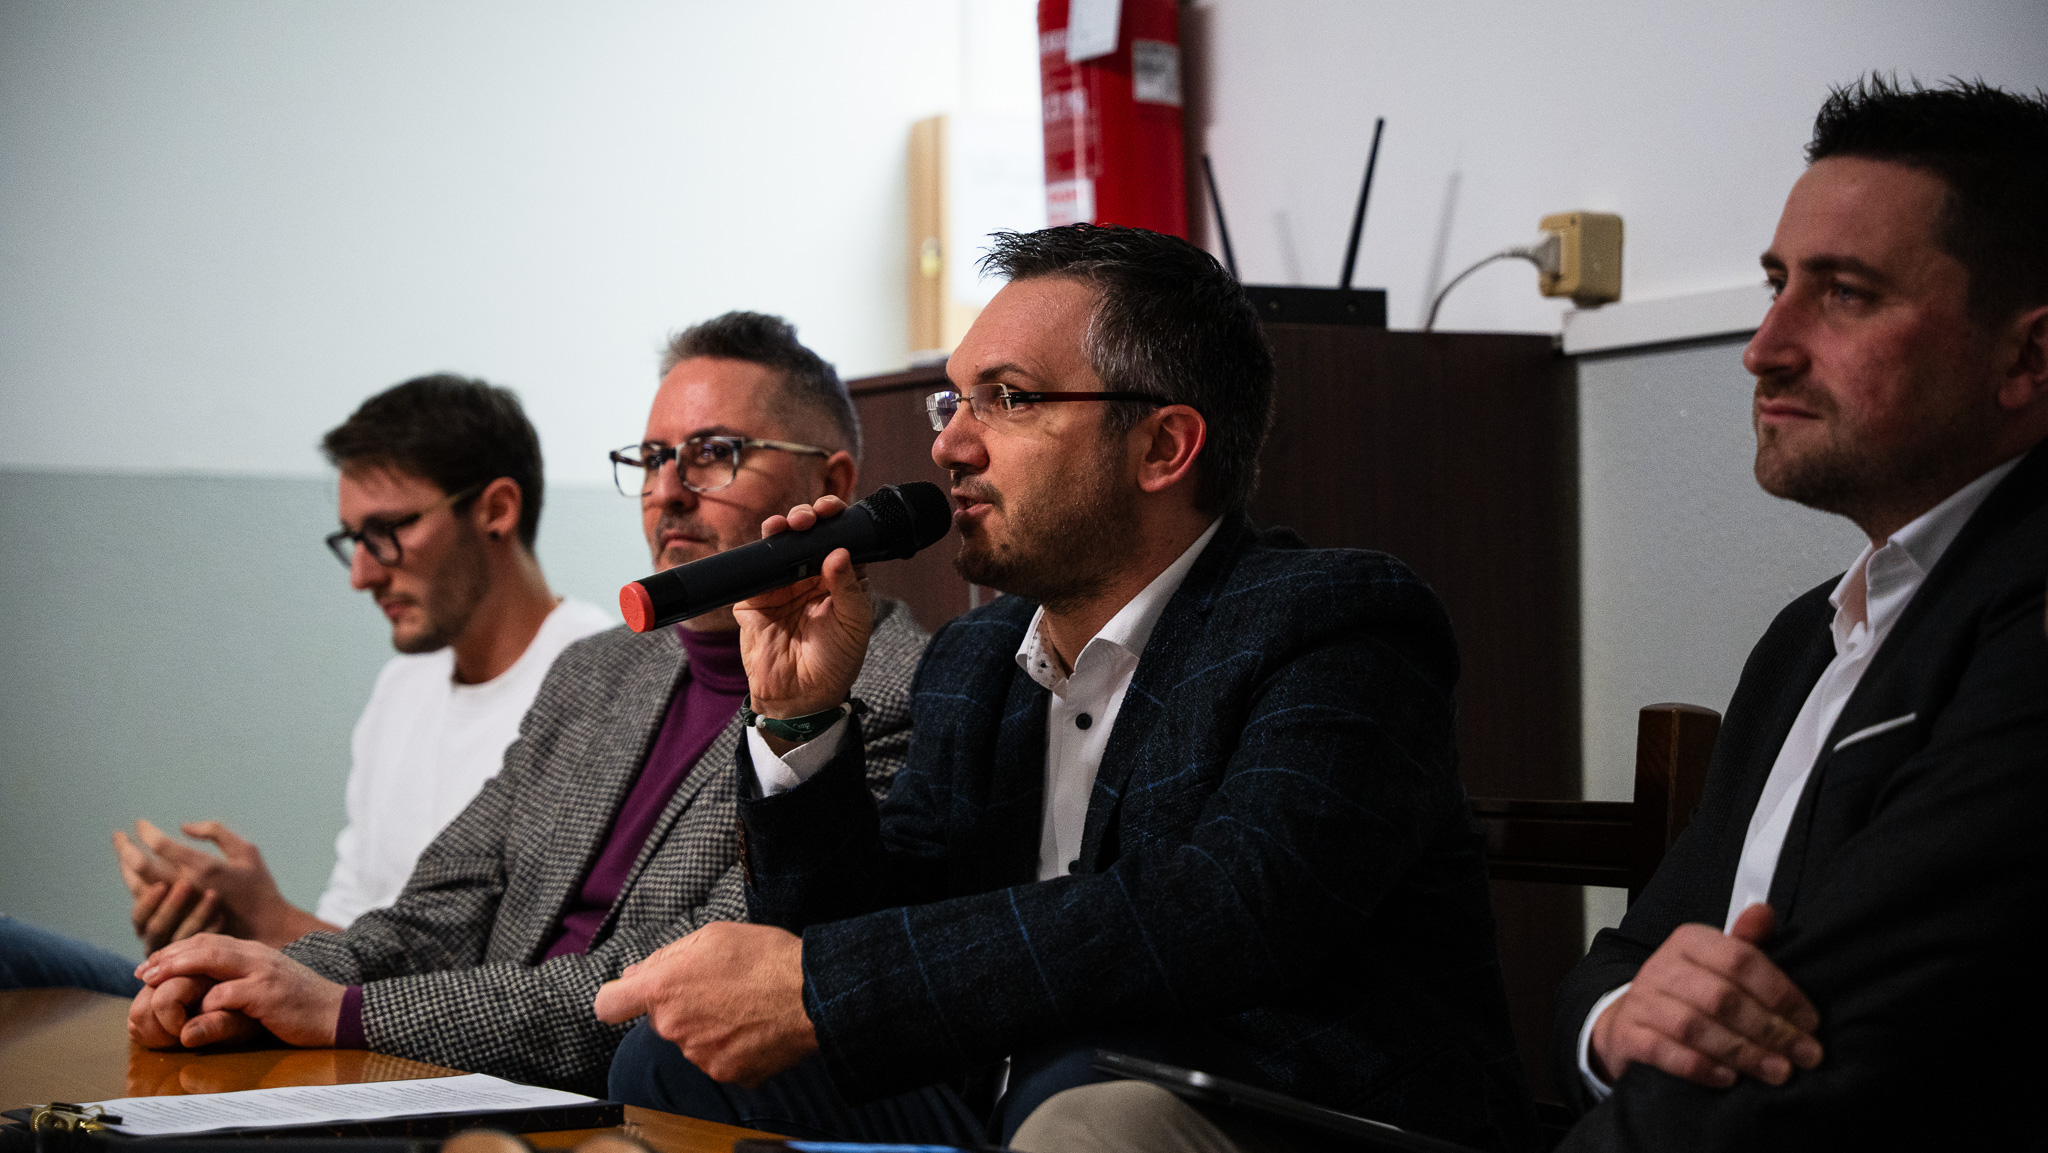 Successo di pubblico per il convegno Generazione Connessa in provincia di Udine 2